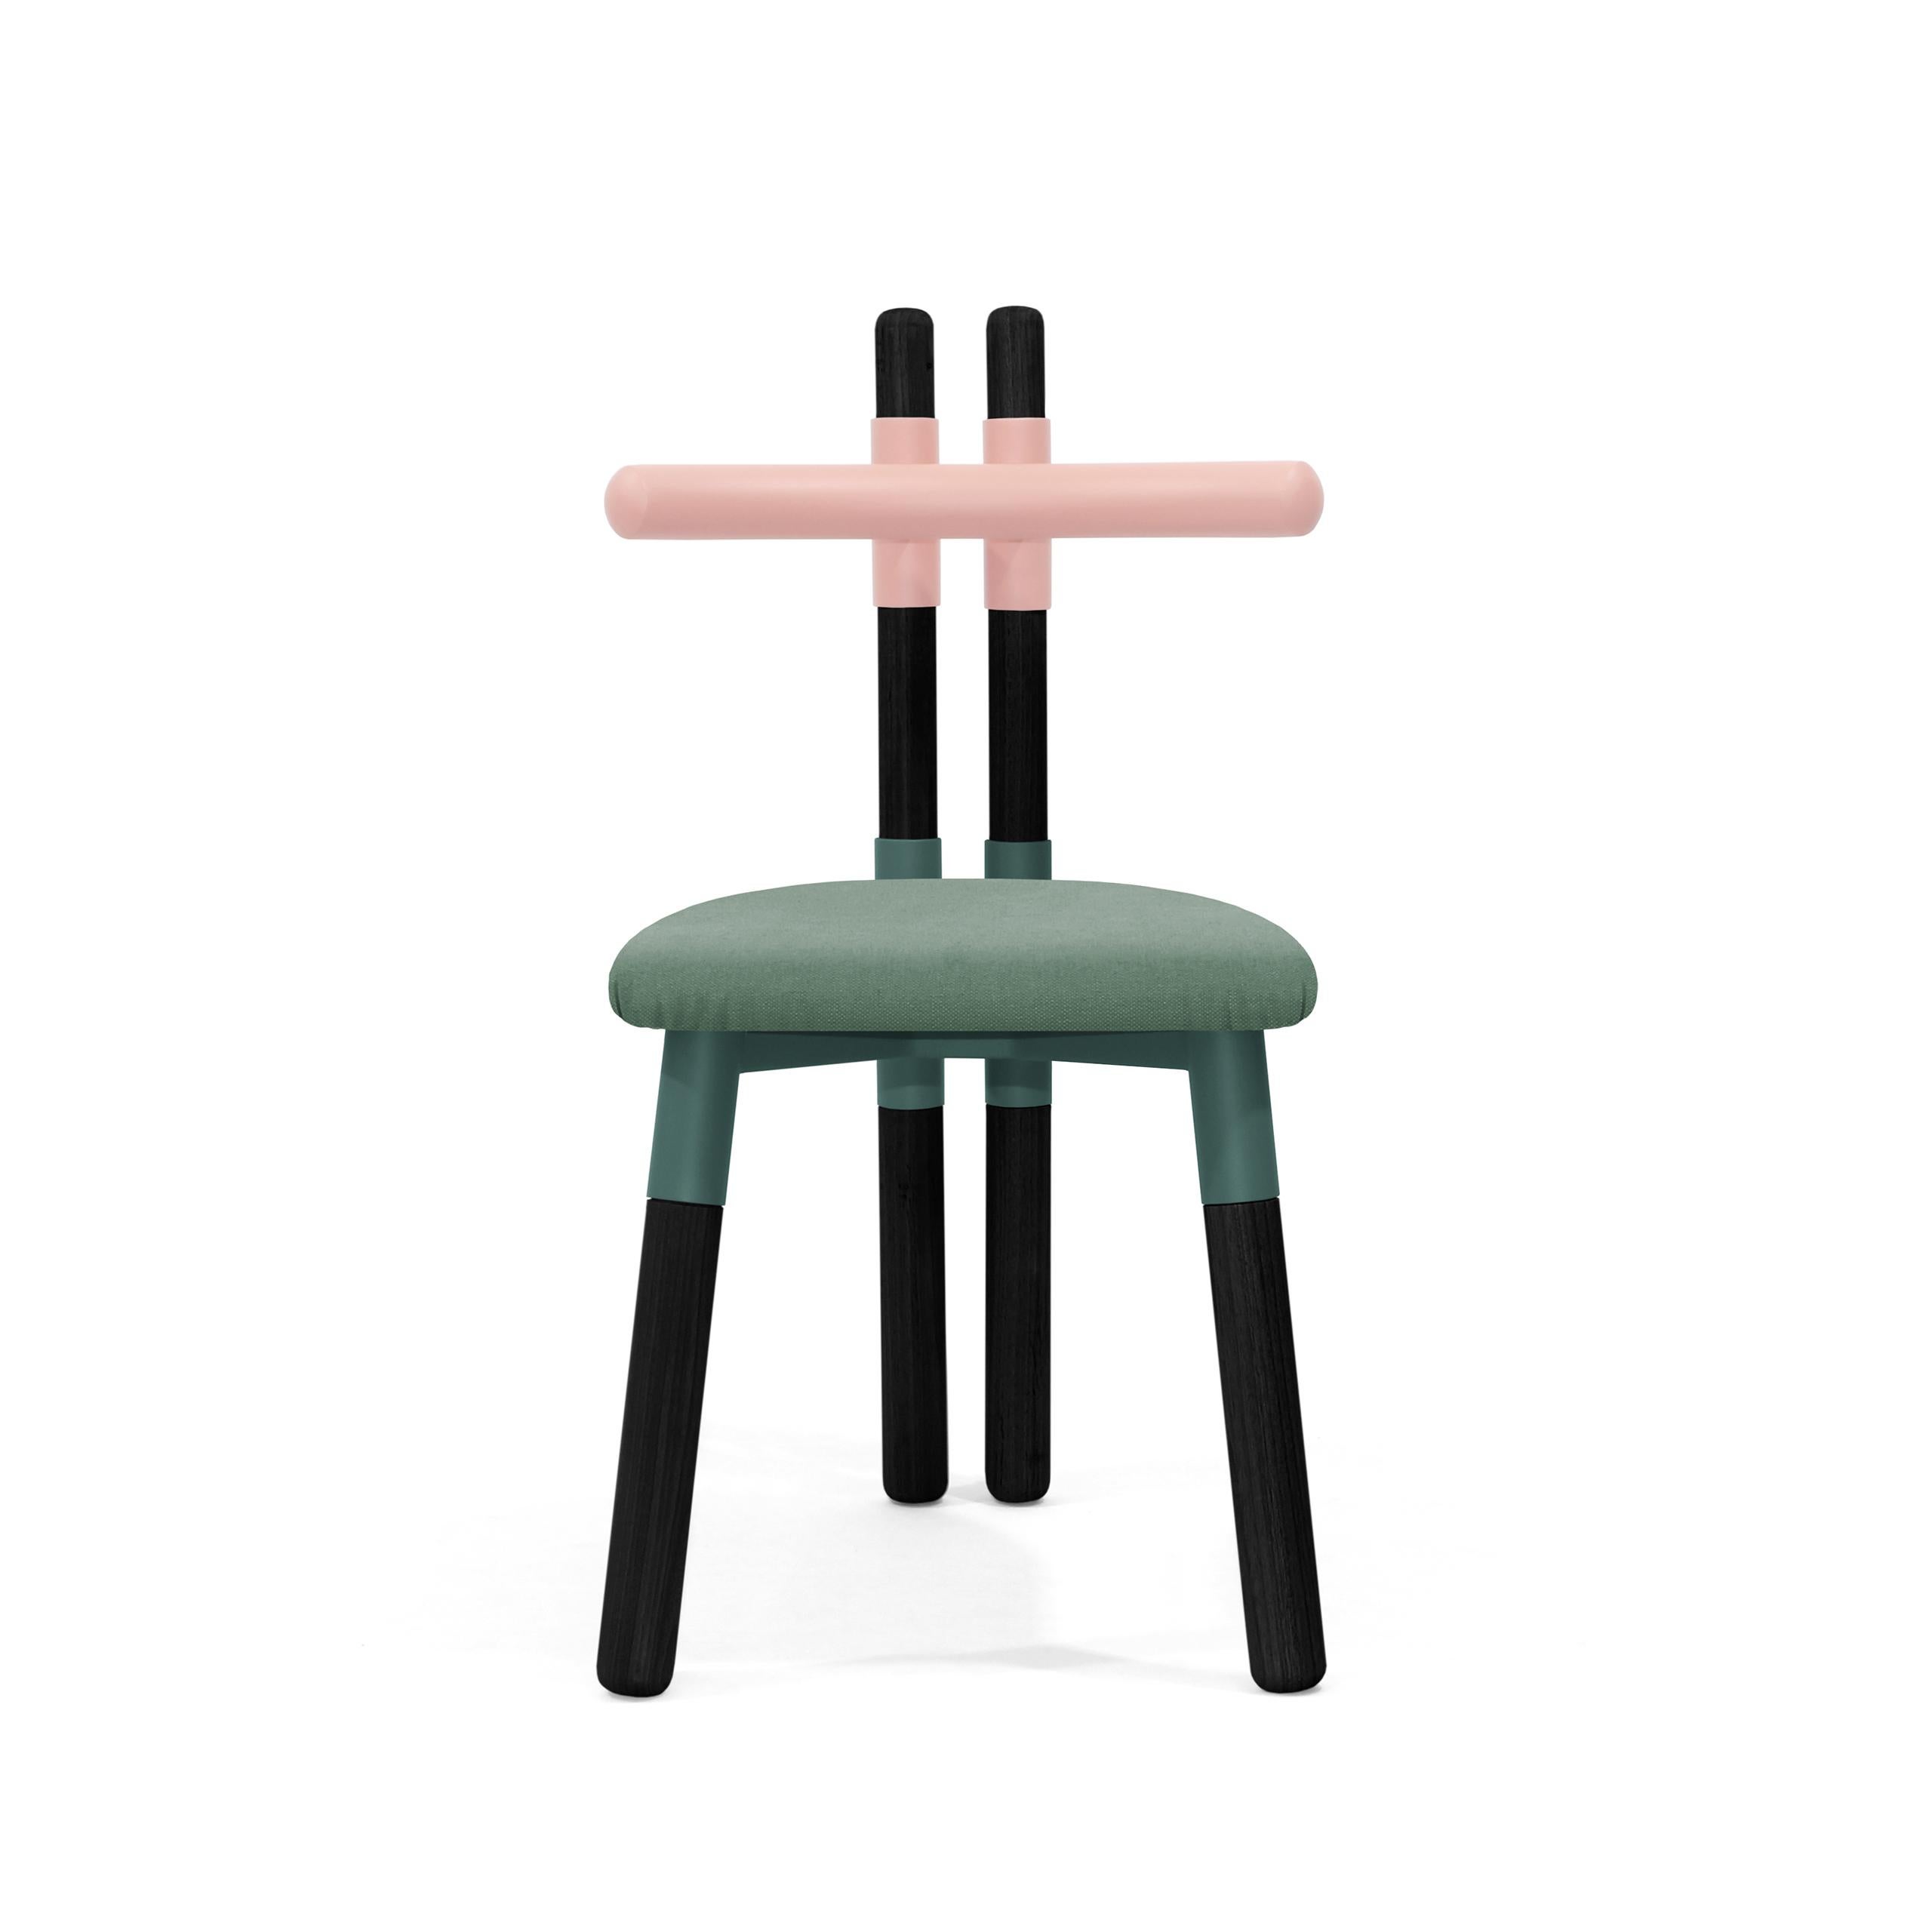 Der Stuhl PK12 ist von den Holzbindern inspiriert, die bei der Konstruktion von Dächern verwendet werden.
Die Stuhlmuffen beziehen sich auf die 